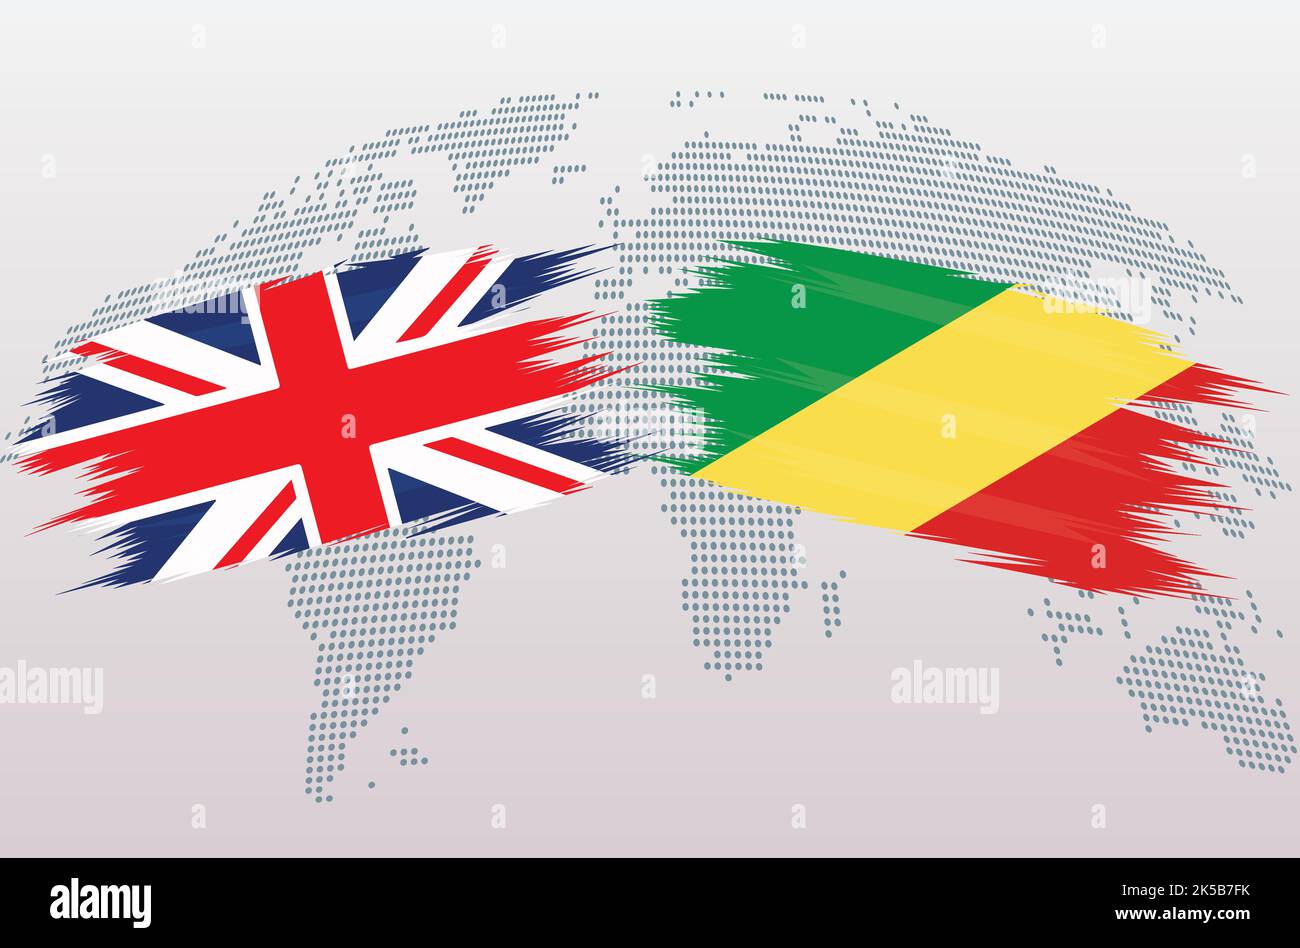 Drapeaux britanniques de la Grande-Bretagne et de la République du Congo. Les drapeaux du Royaume-Uni contre le Congo, isolés sur fond gris de la carte du monde. Illustration vectorielle. Illustration de Vecteur